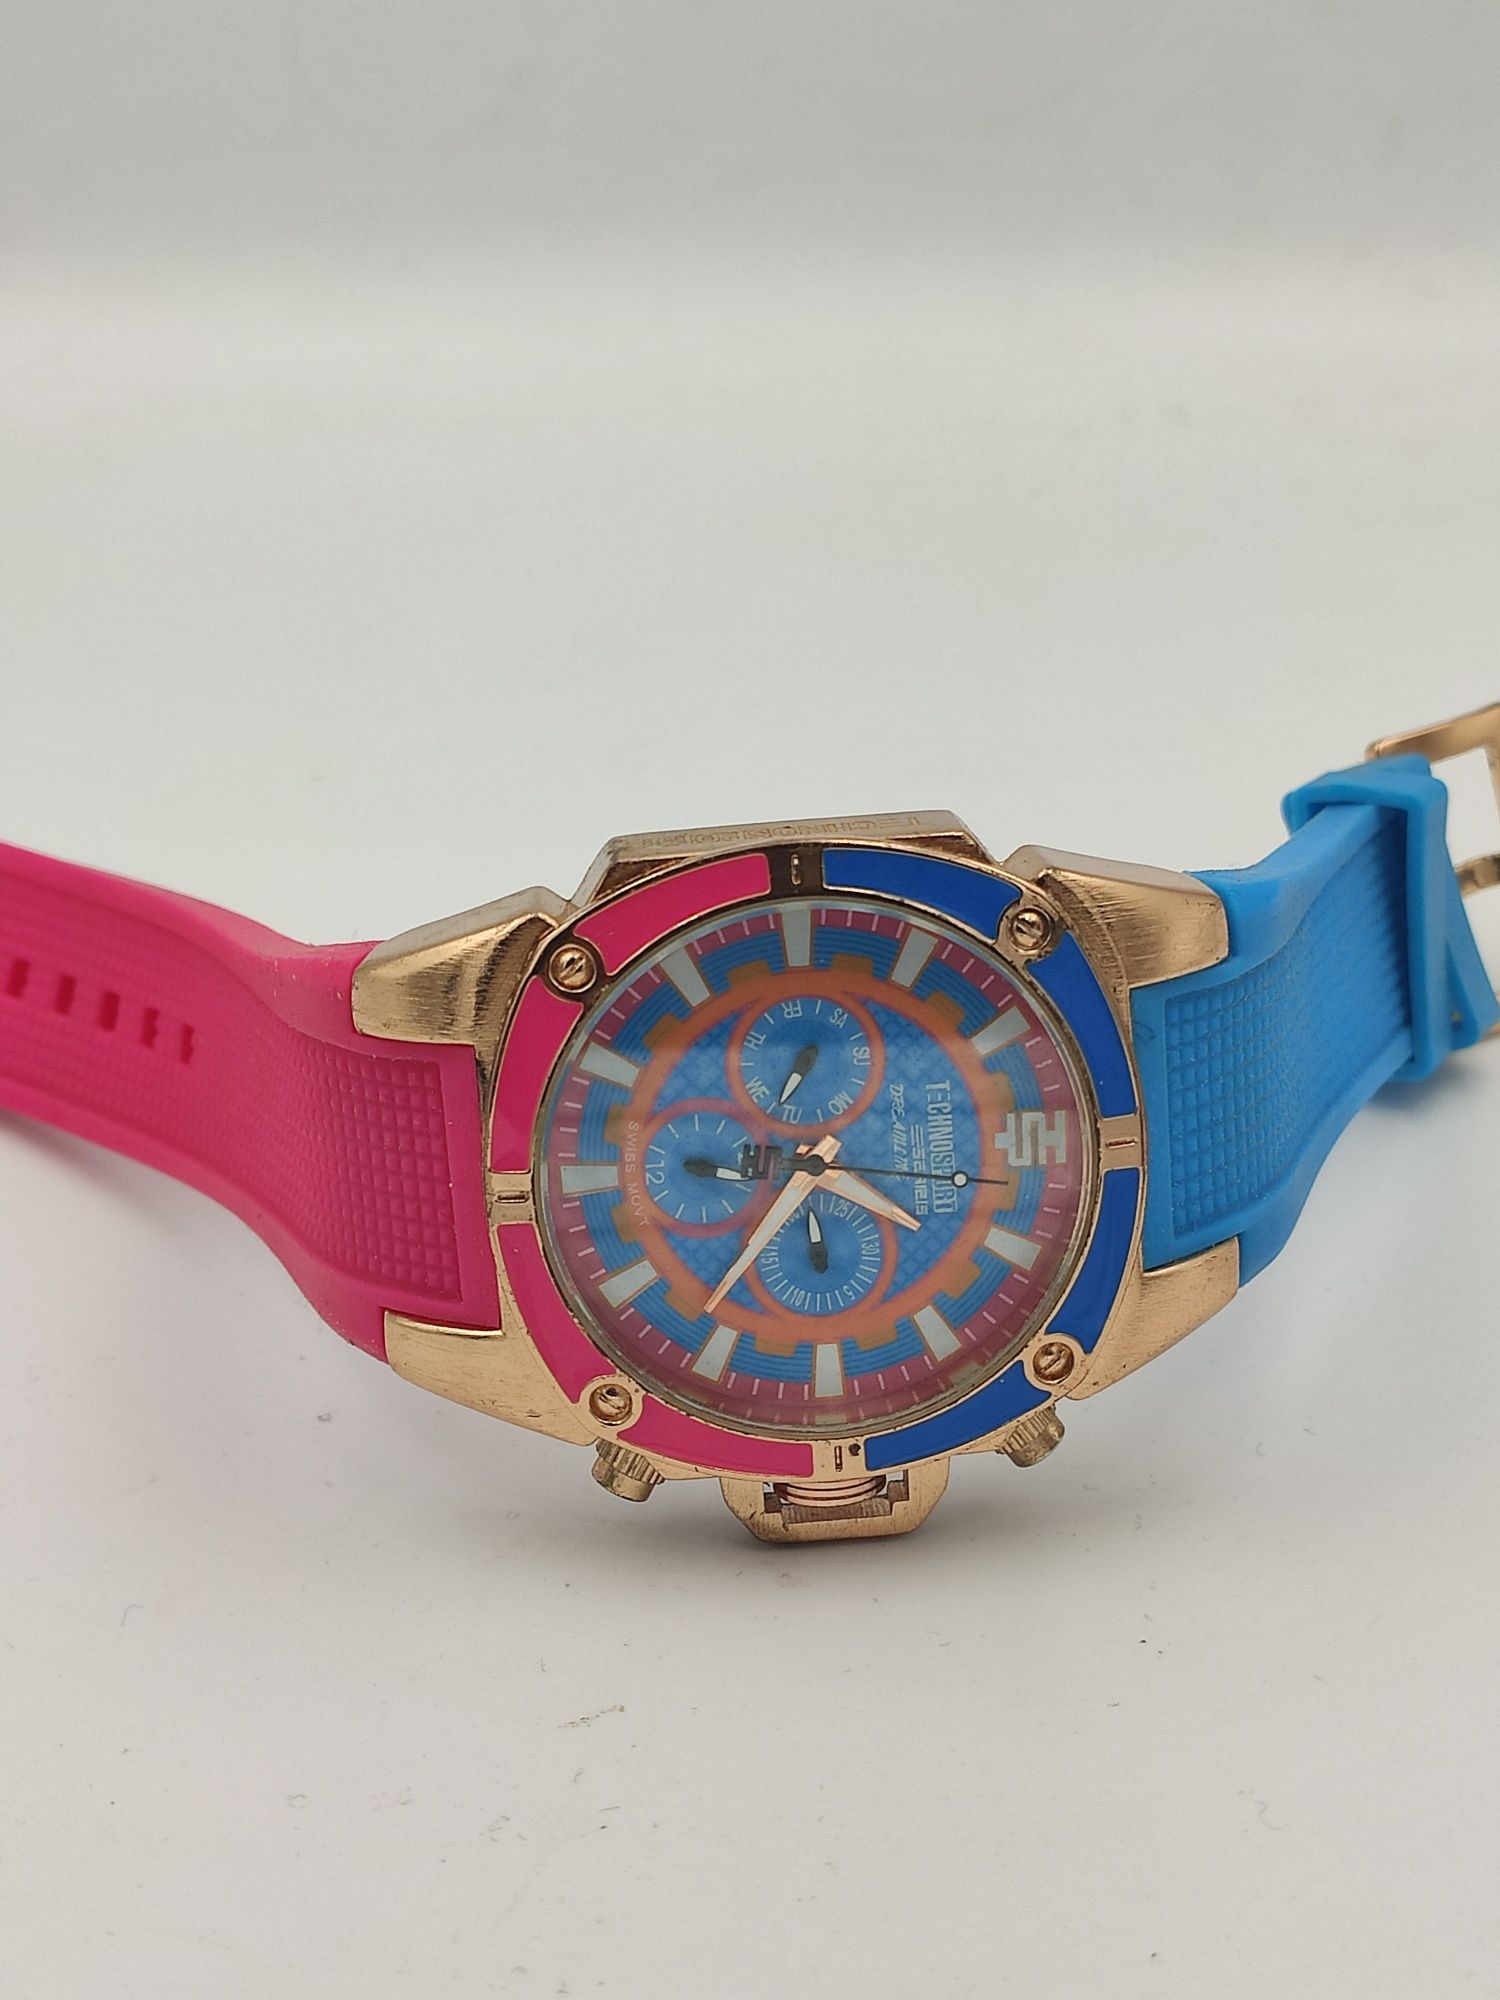 Zegarek damski jak Technosport piękny niebiesko różowy